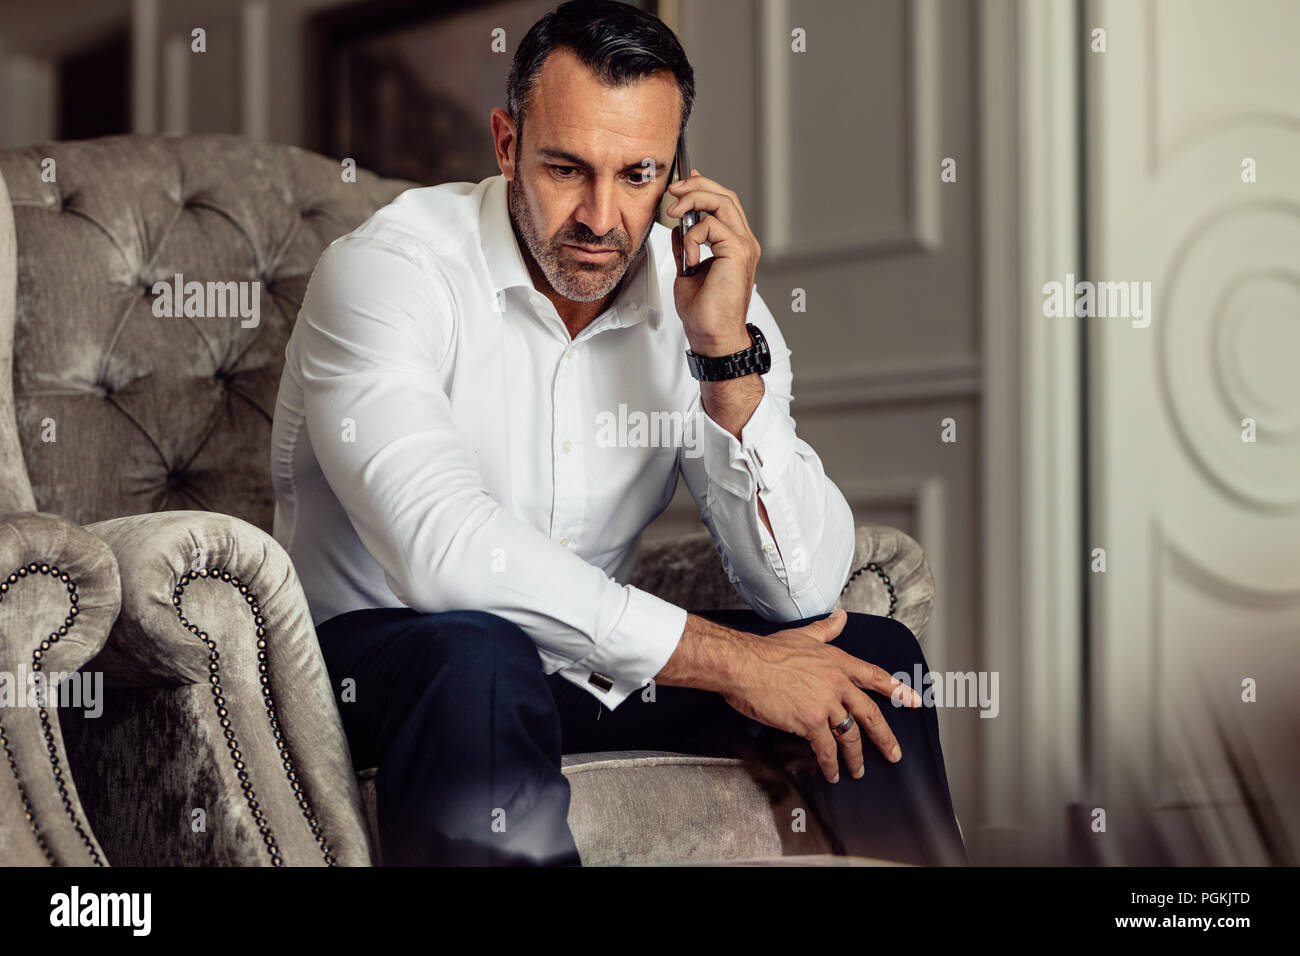 Imprenditore facendo una telefonata dopo essere arrivati nella stanza dell'hotel. Uomo in abbigliamento formale seduti su una sedia e parlare sullo smartphone. Foto Stock